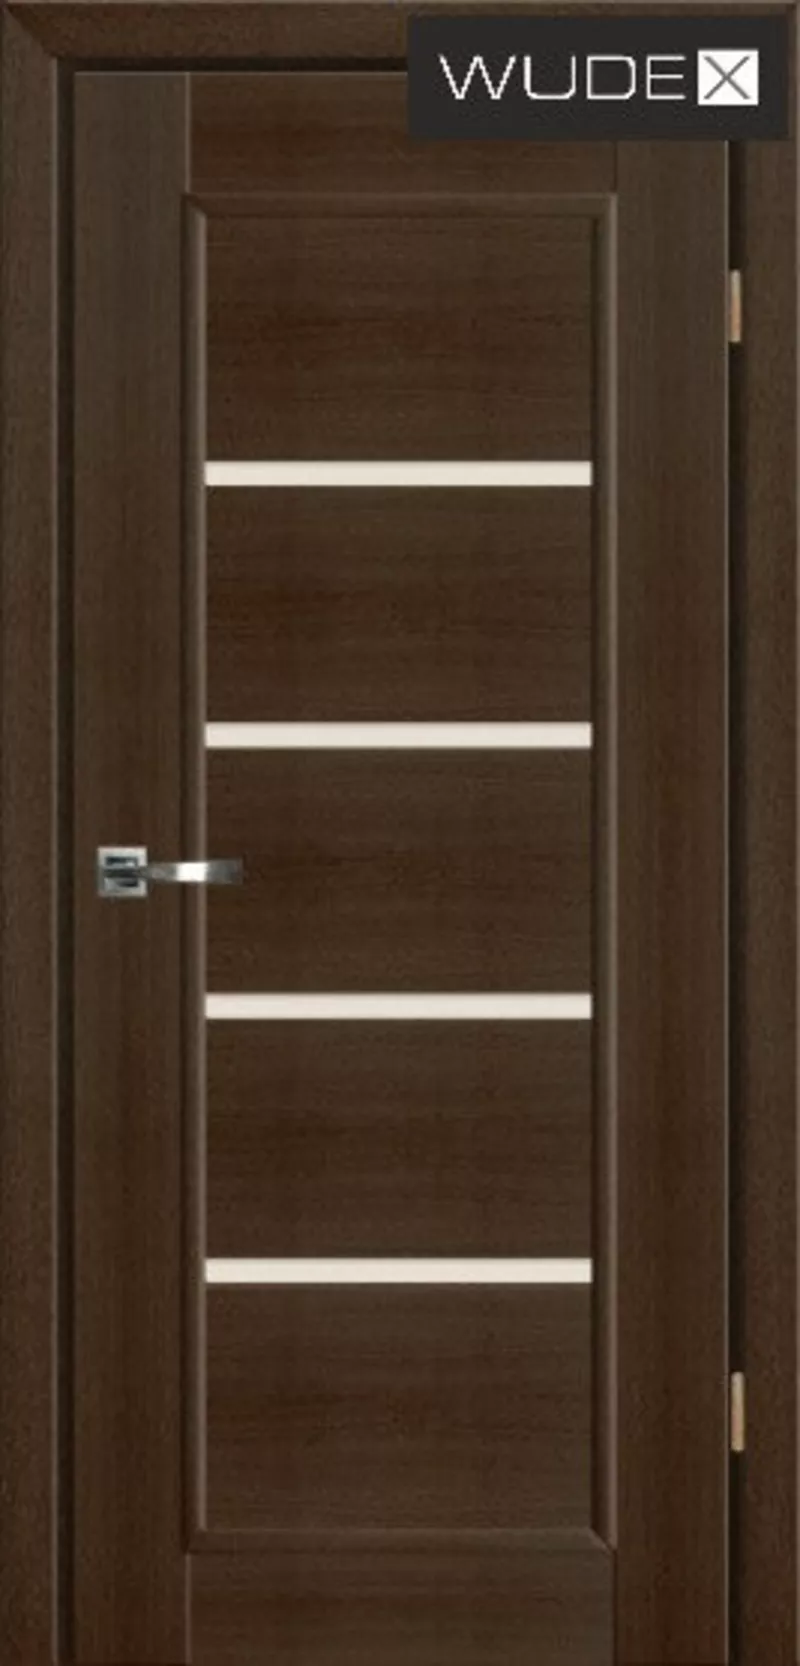 Двери межкомнатные WUDEX (ВУДЕКС двери) - шпон натуральный